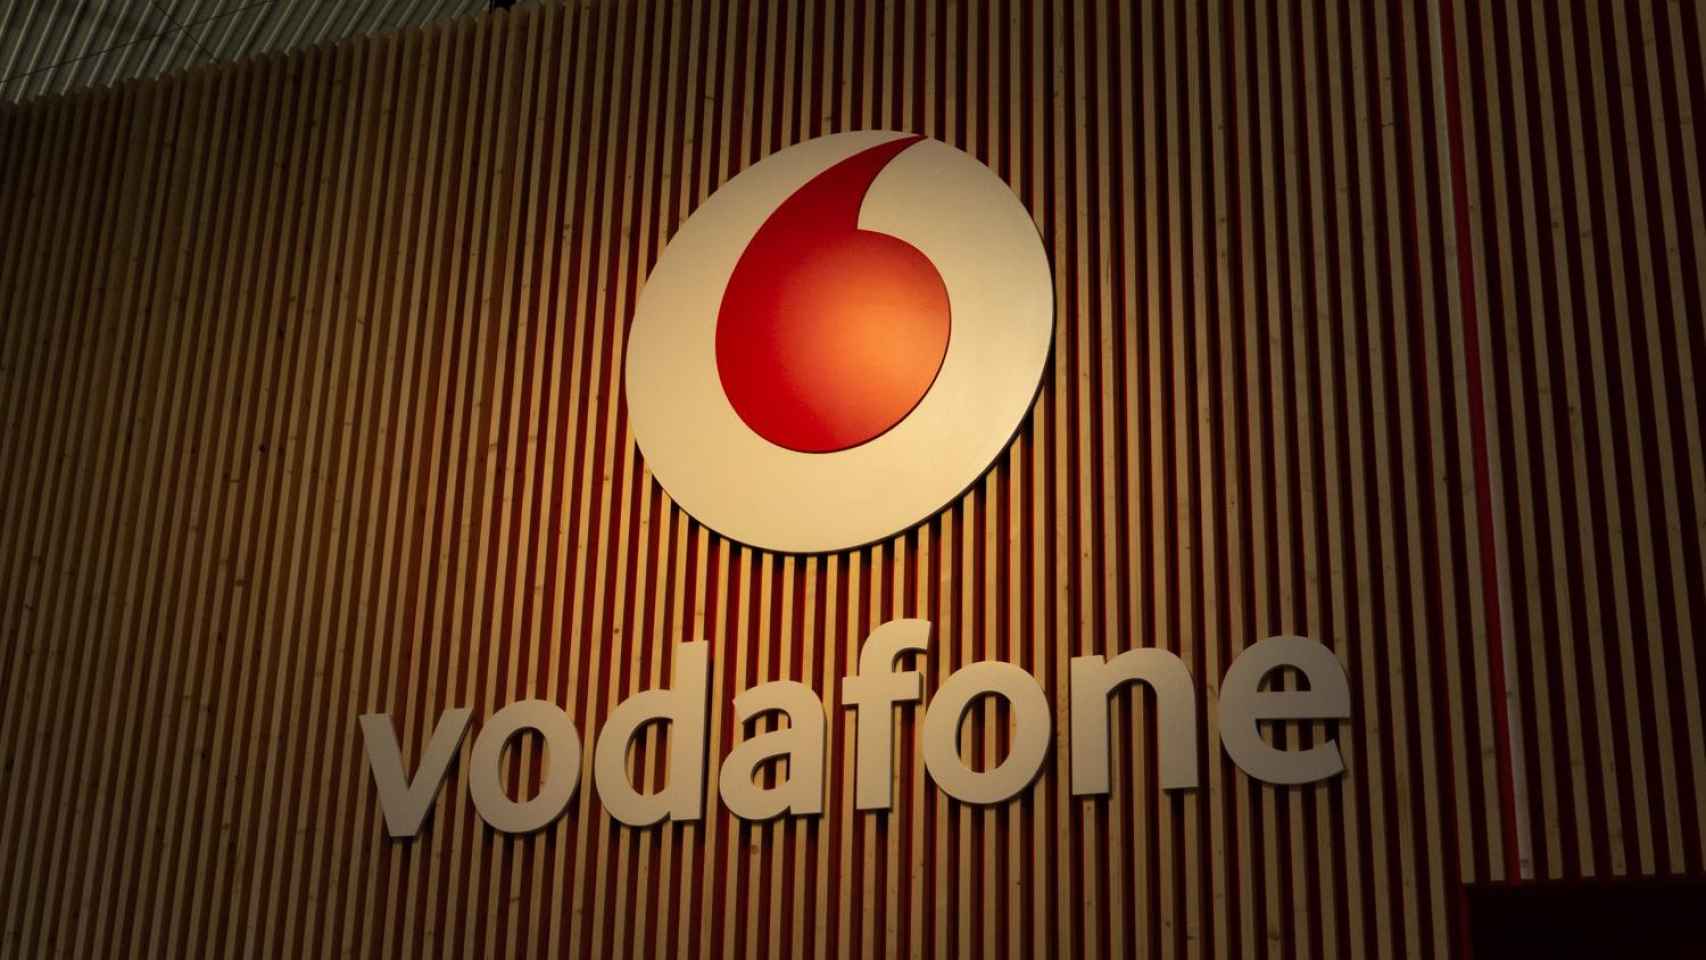 Vodafone en el Mobile World Congress / LUIS MIGUEL AÑÓN (CG)